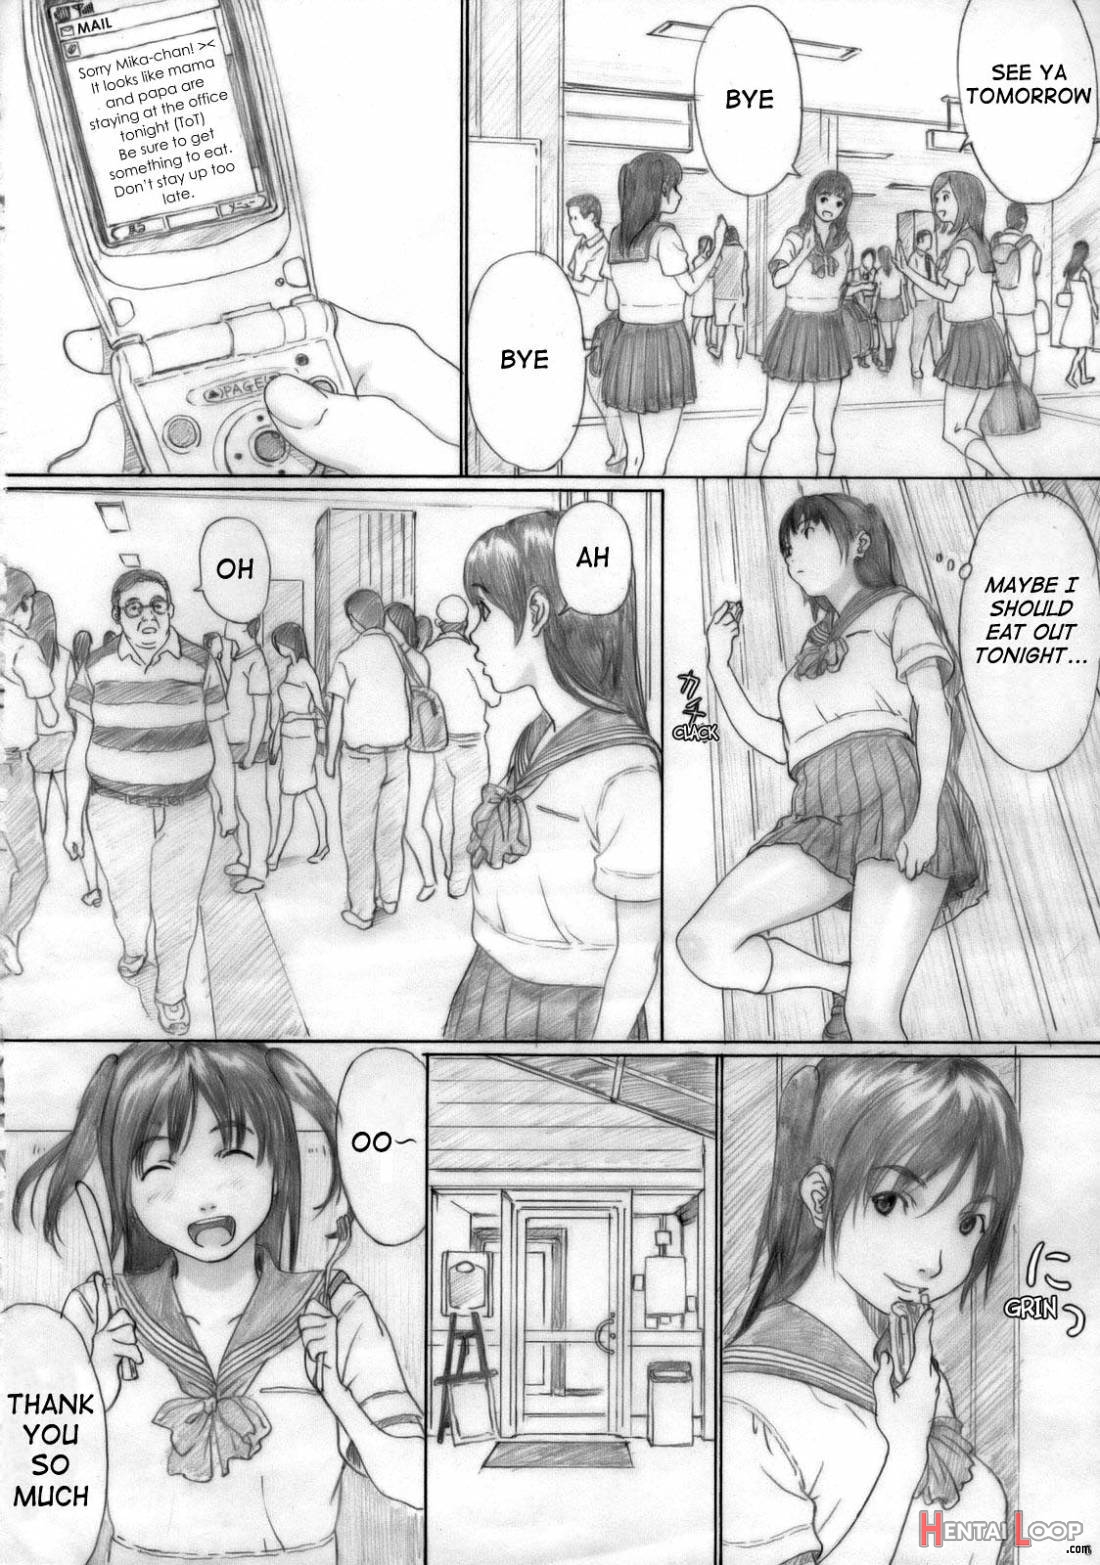 Suimitsu Shoujo 1 page 6